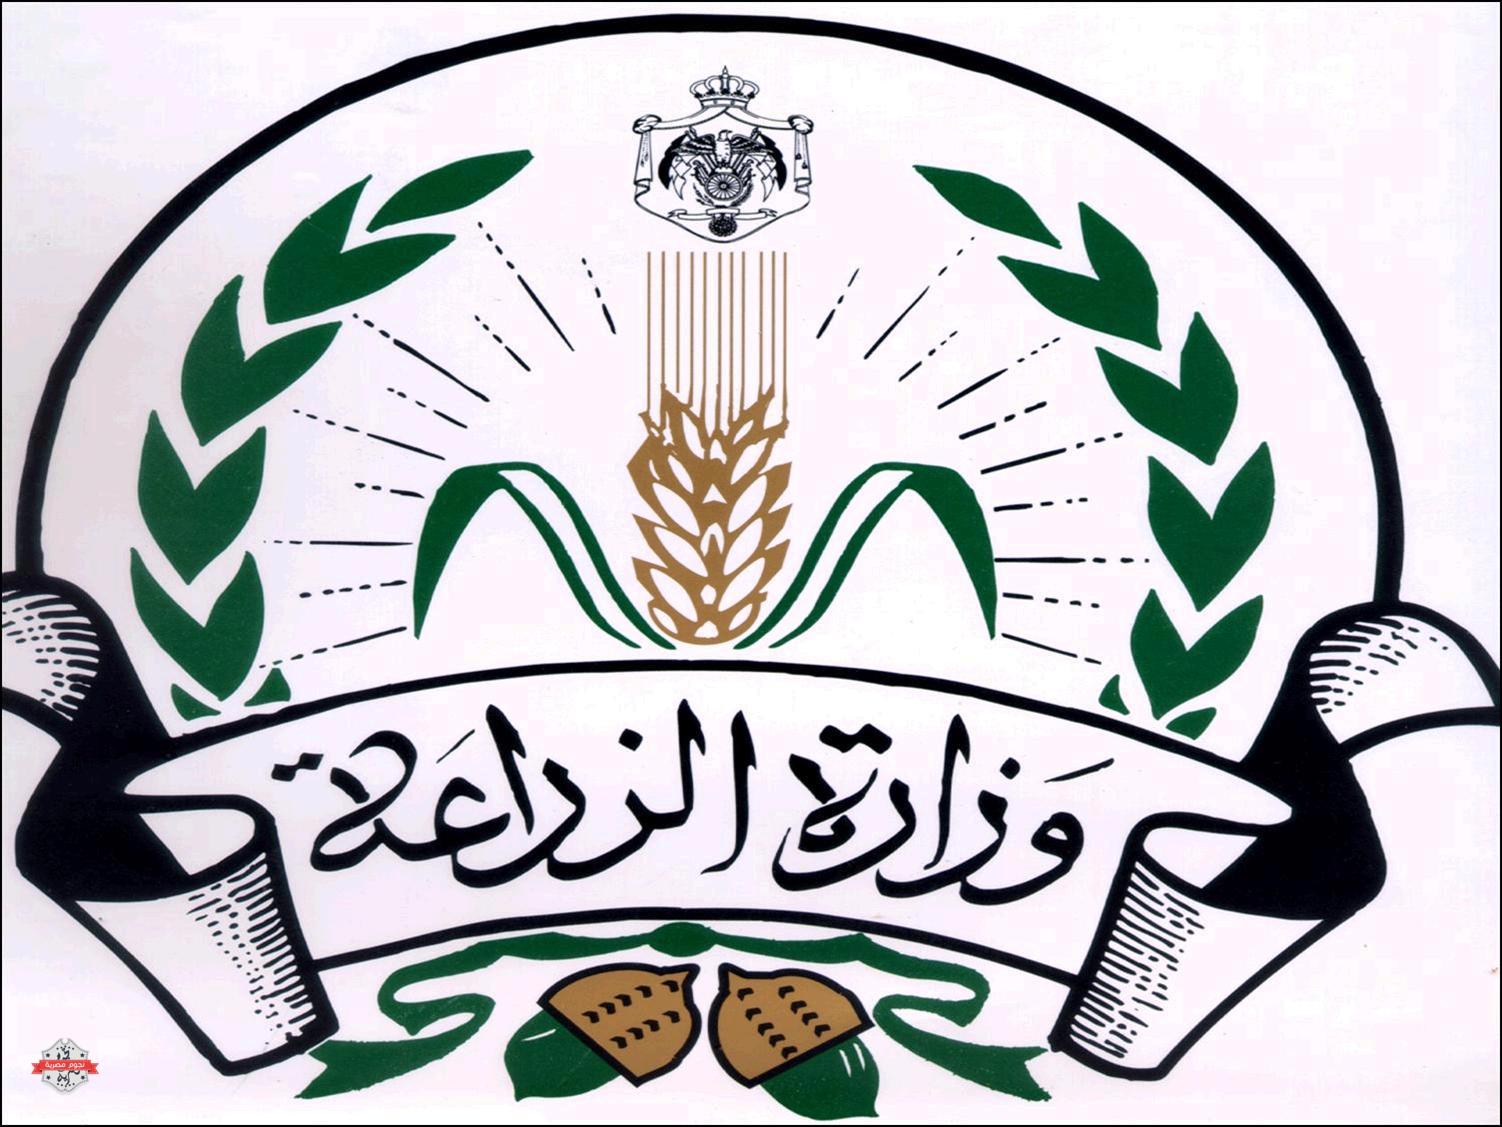   وفد من وزارتي الزراعة والاستثمار يمثل مصر في المؤتمر العربي الثالث للاستثمار الزراعي بالخرطوم